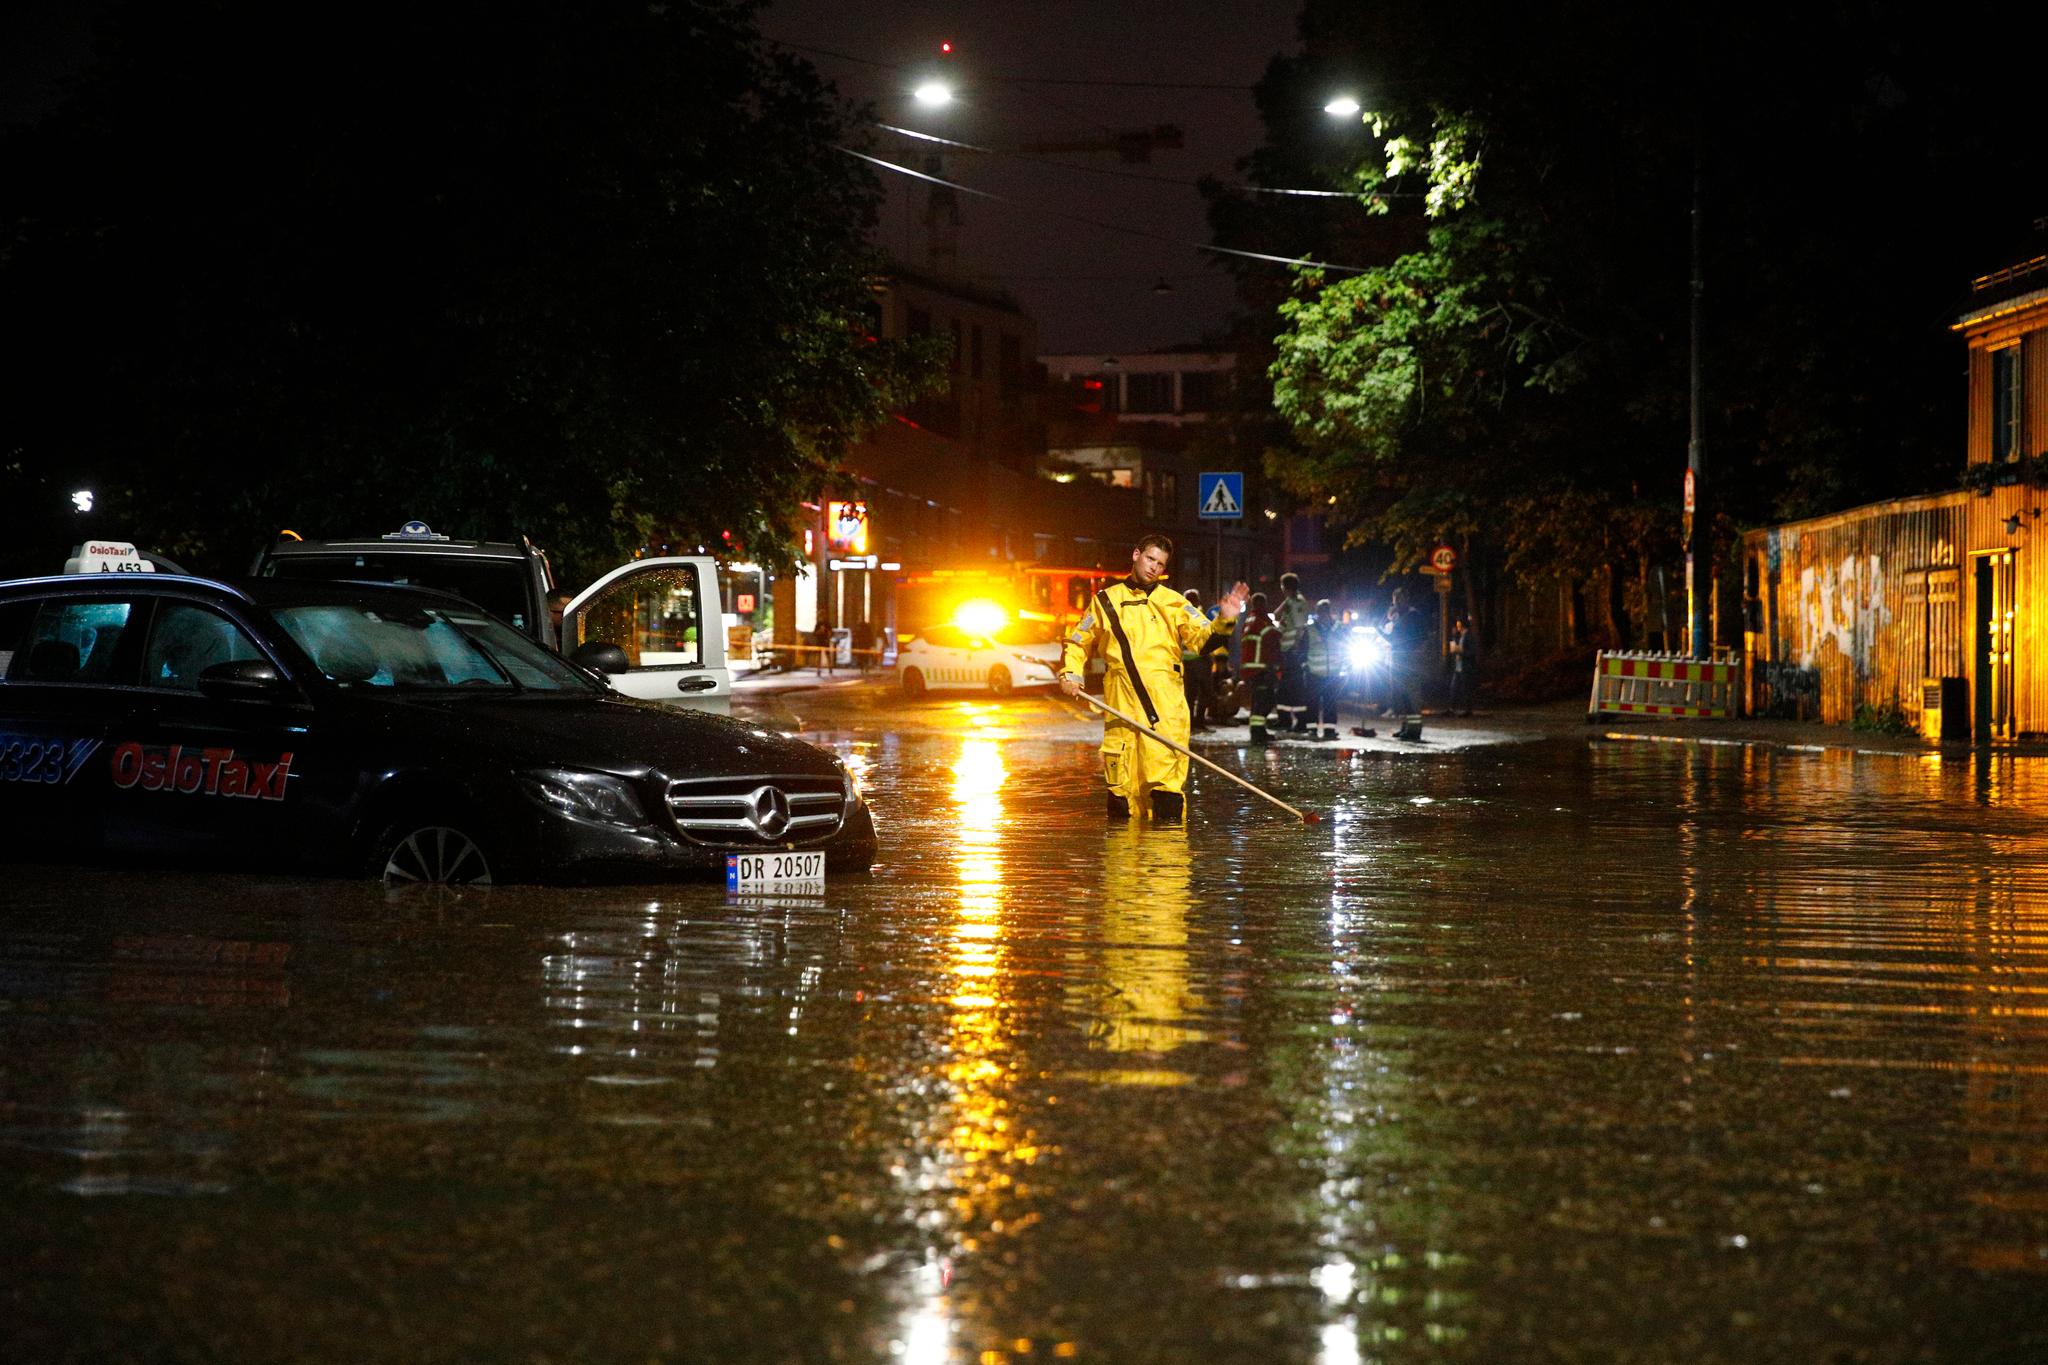 Biler ble stående med motoren under vann flere steder da det kom kraftig nedbør i Oslo natt til søndag.